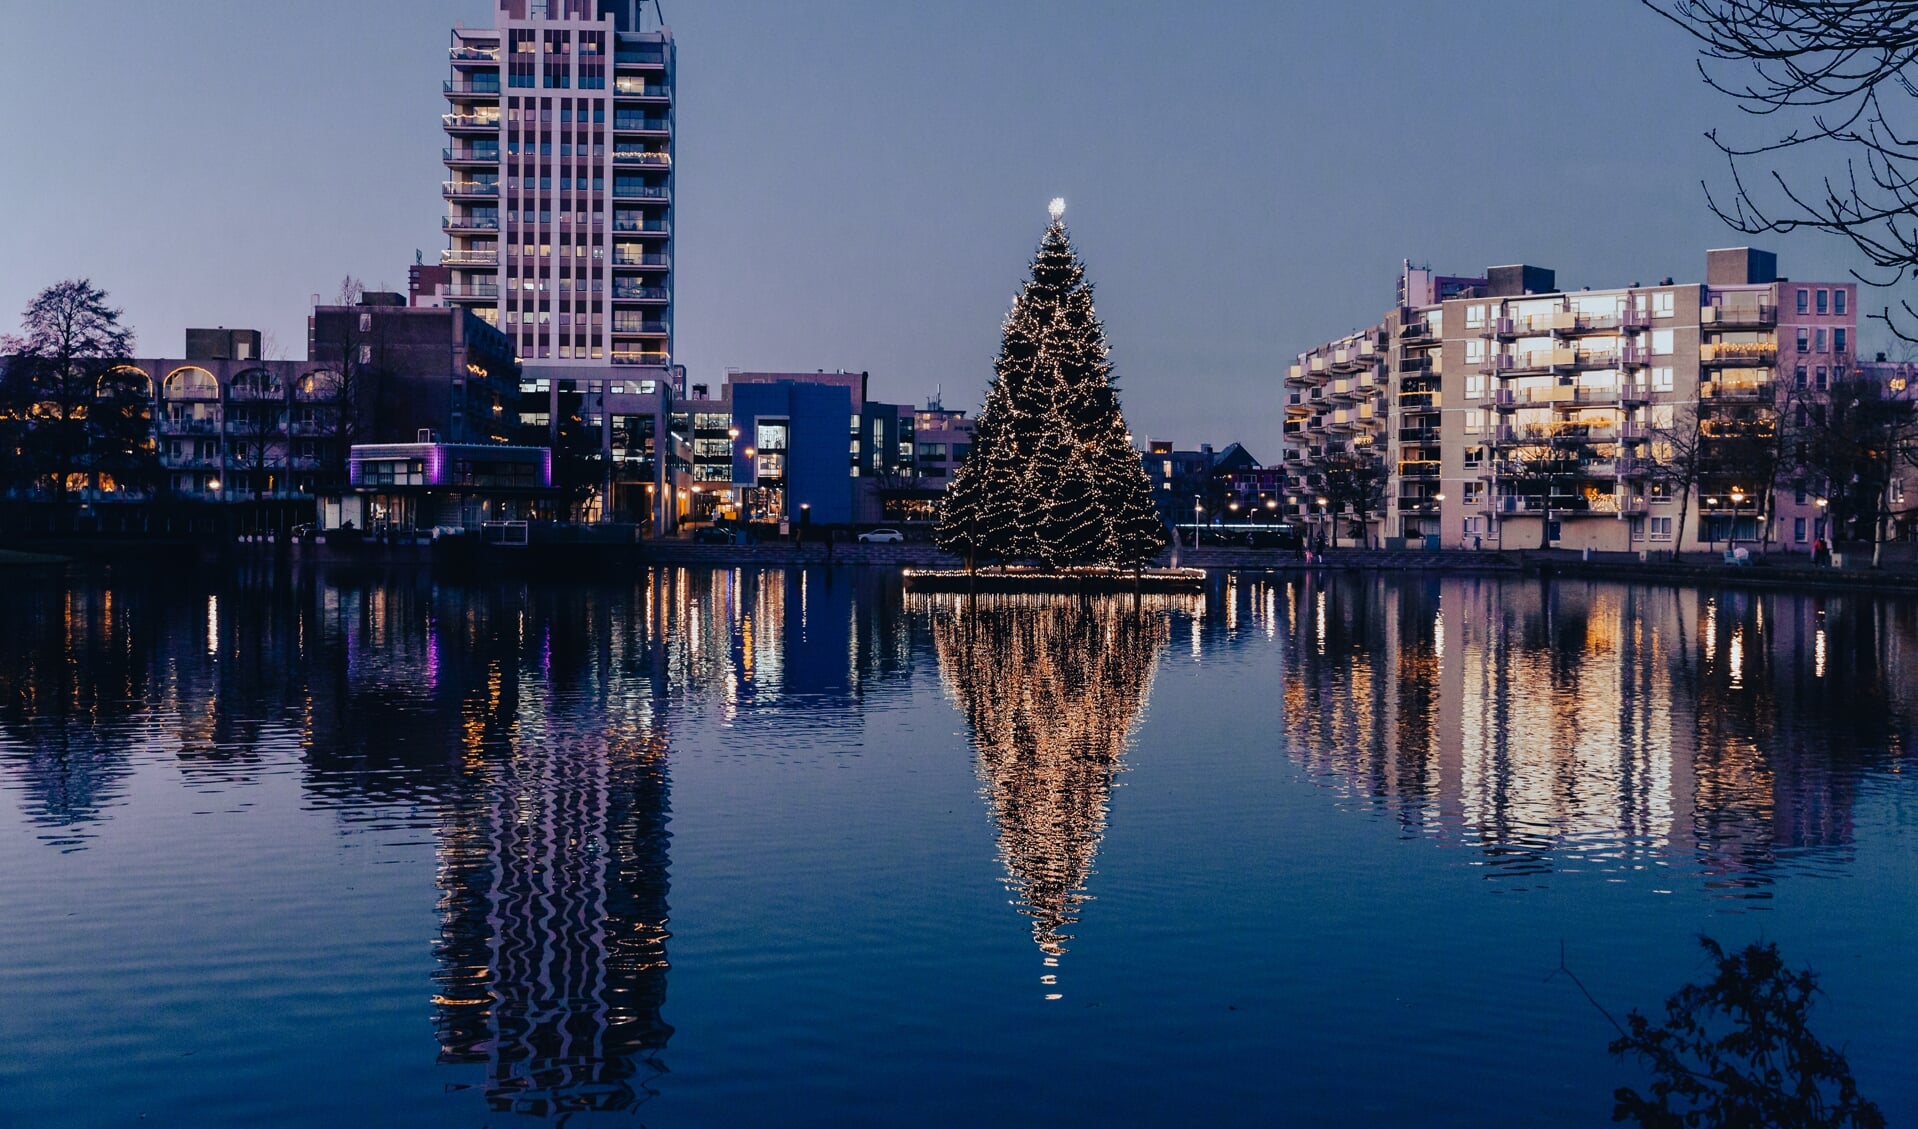 De kerstboom op de Dobbe